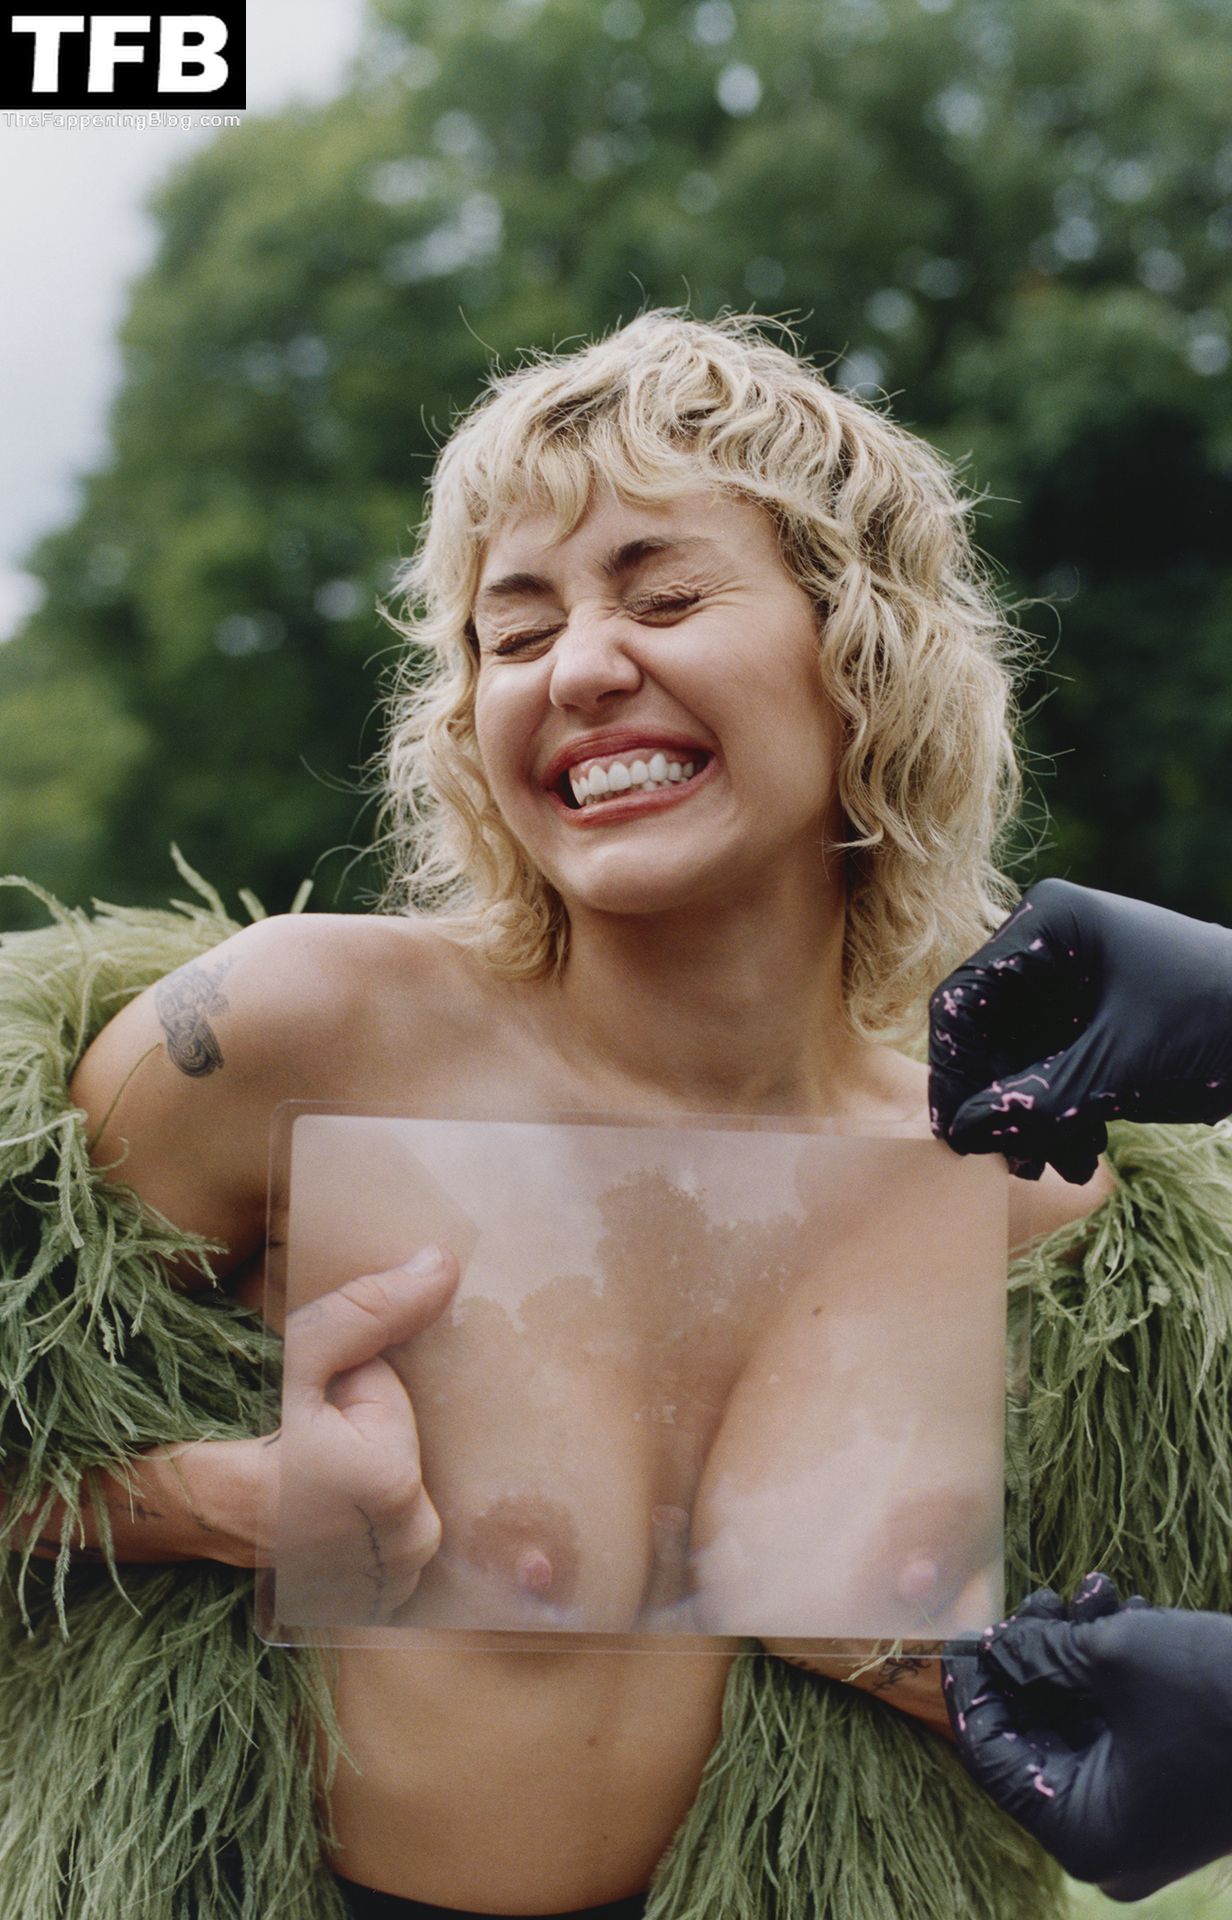 Miley cyrus nude photo hack